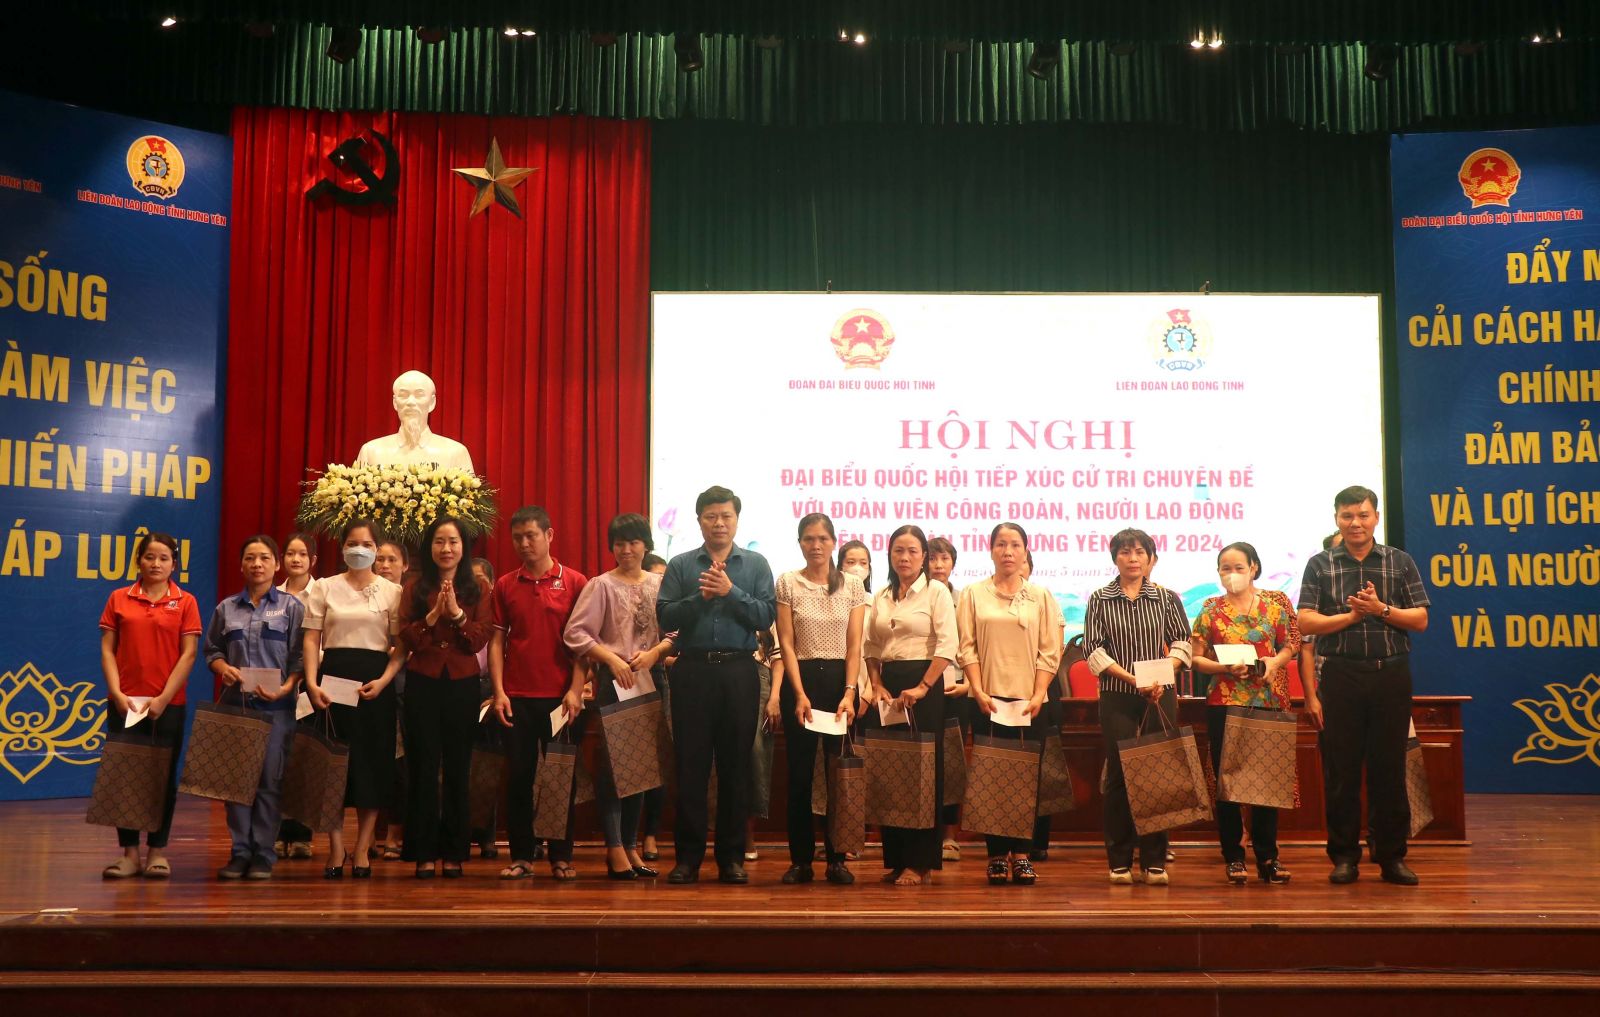 Đoàn đại biểu Quốc hội tỉnh Hưng Yên tiếp xúc cử tri chuyên đề  với đoàn viên Công đoàn, người lao động